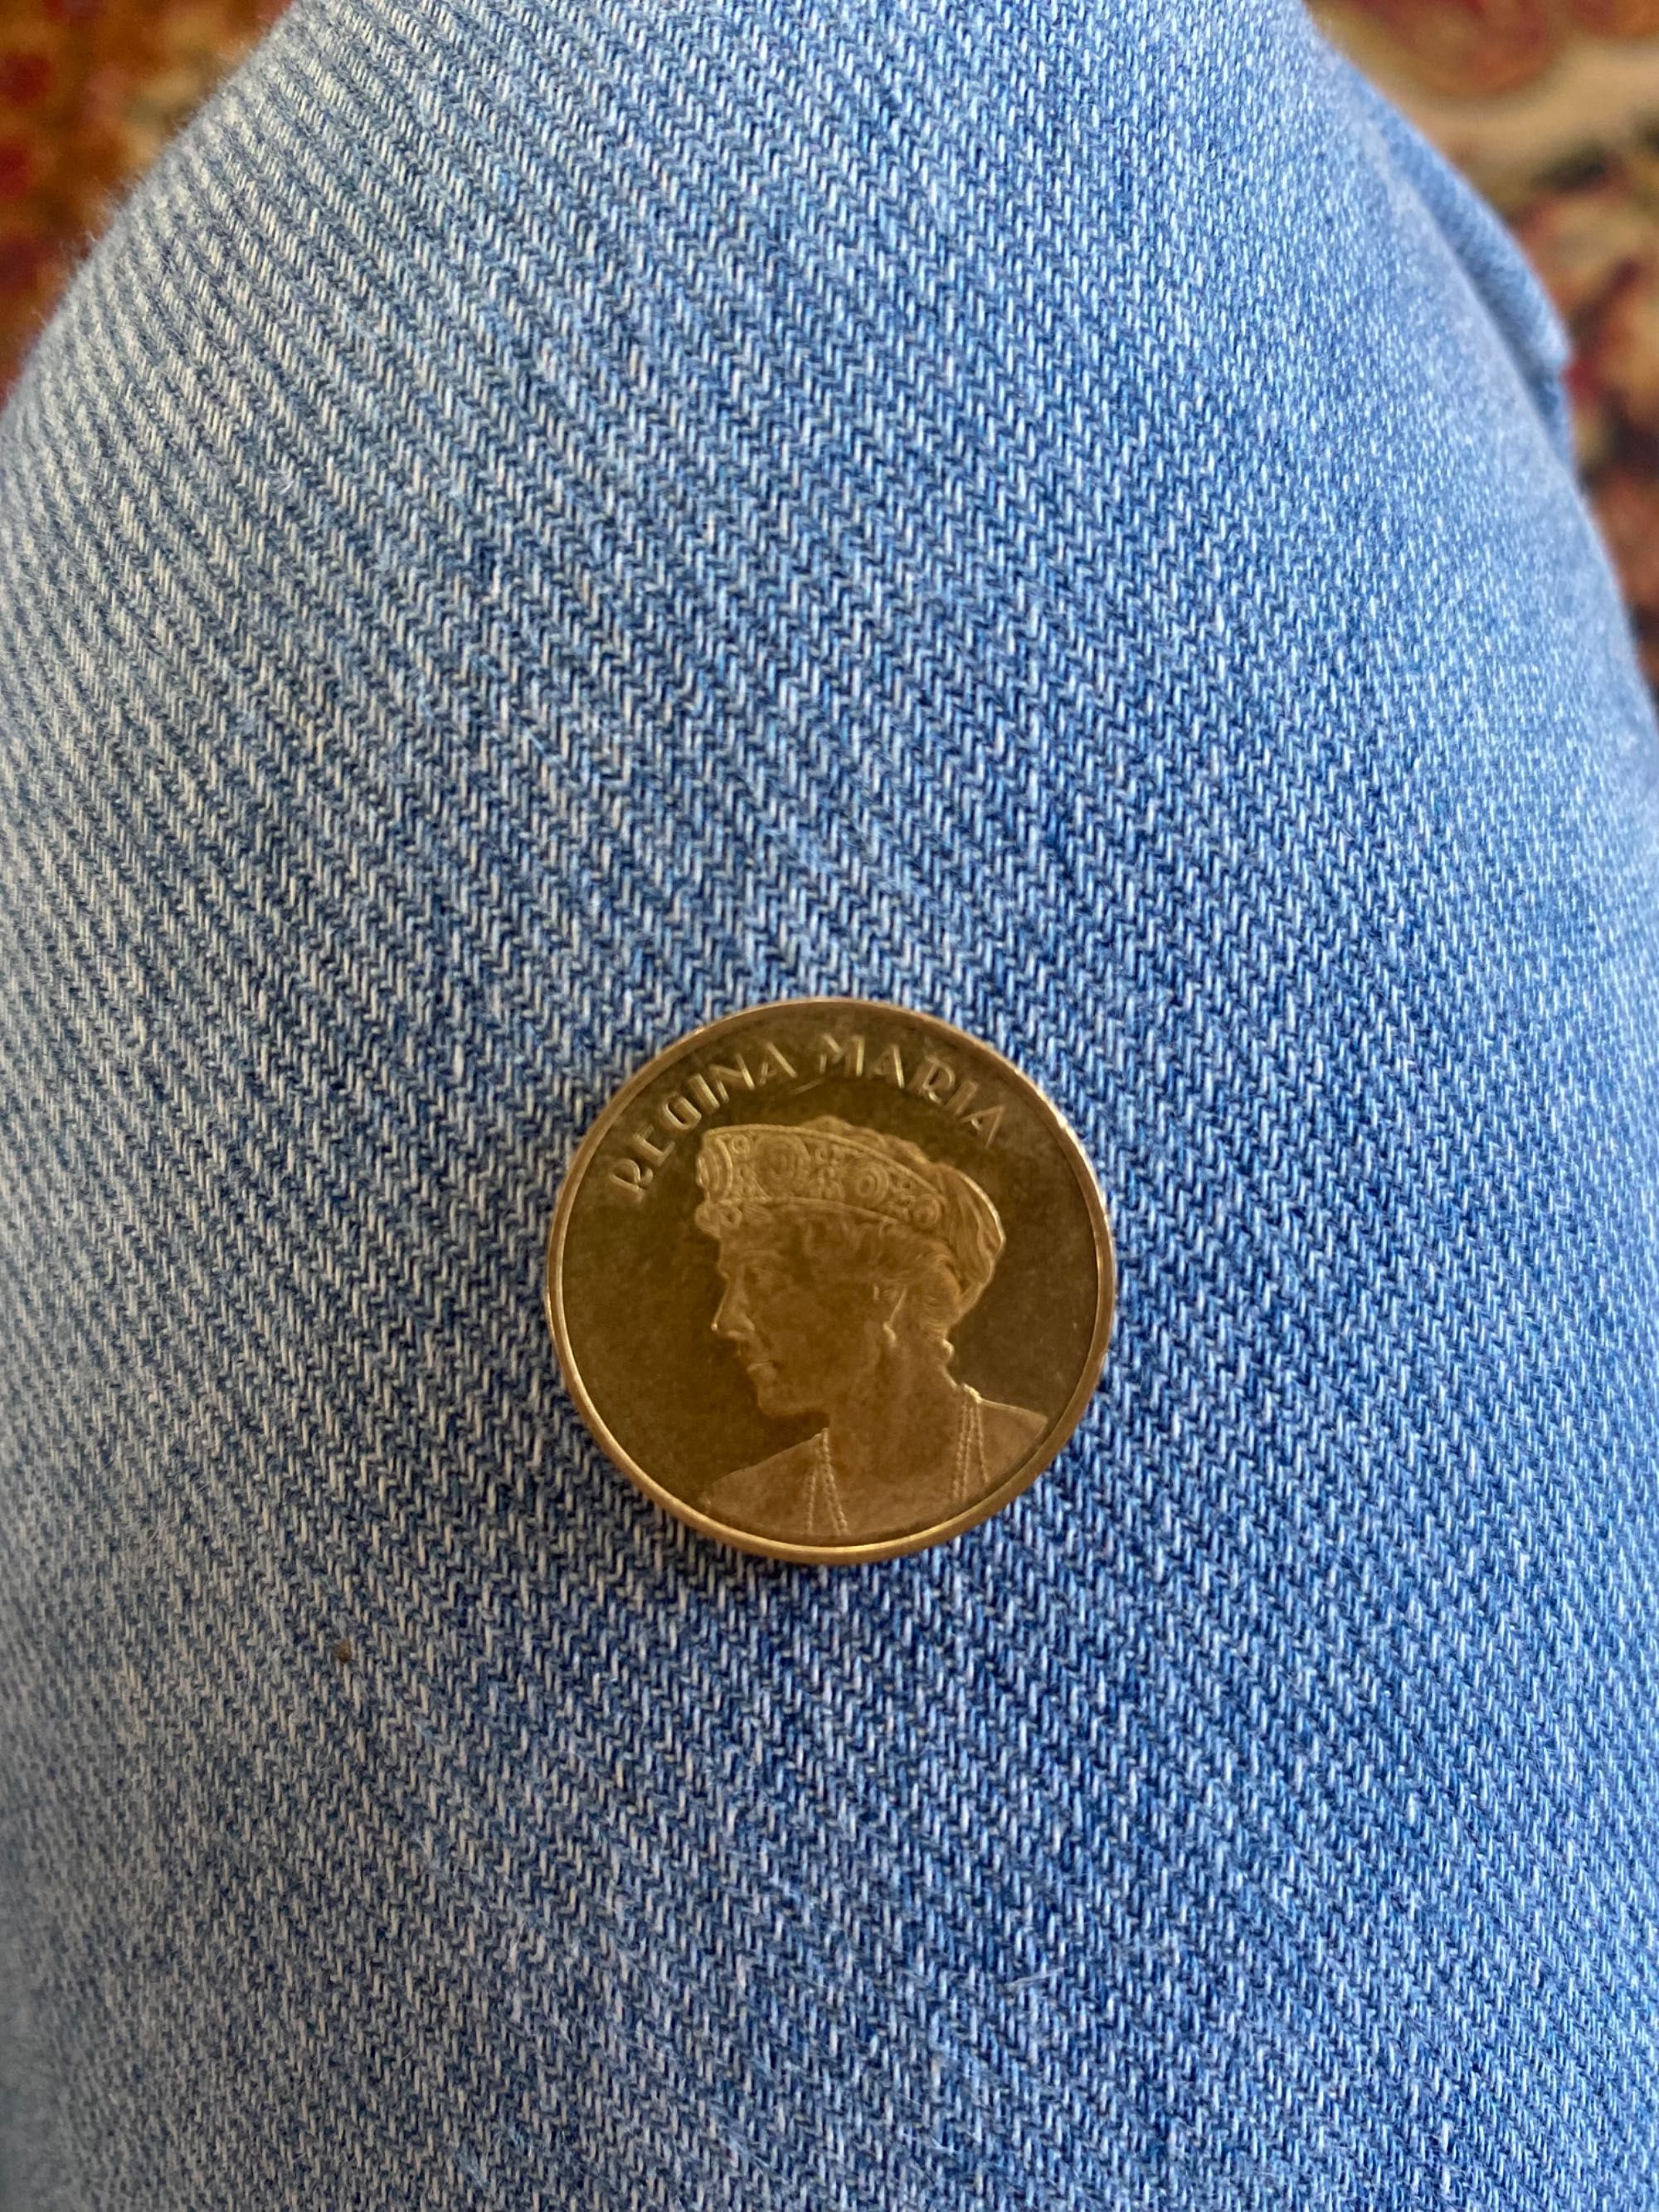 Monedă unică Regina Maria rară 2019